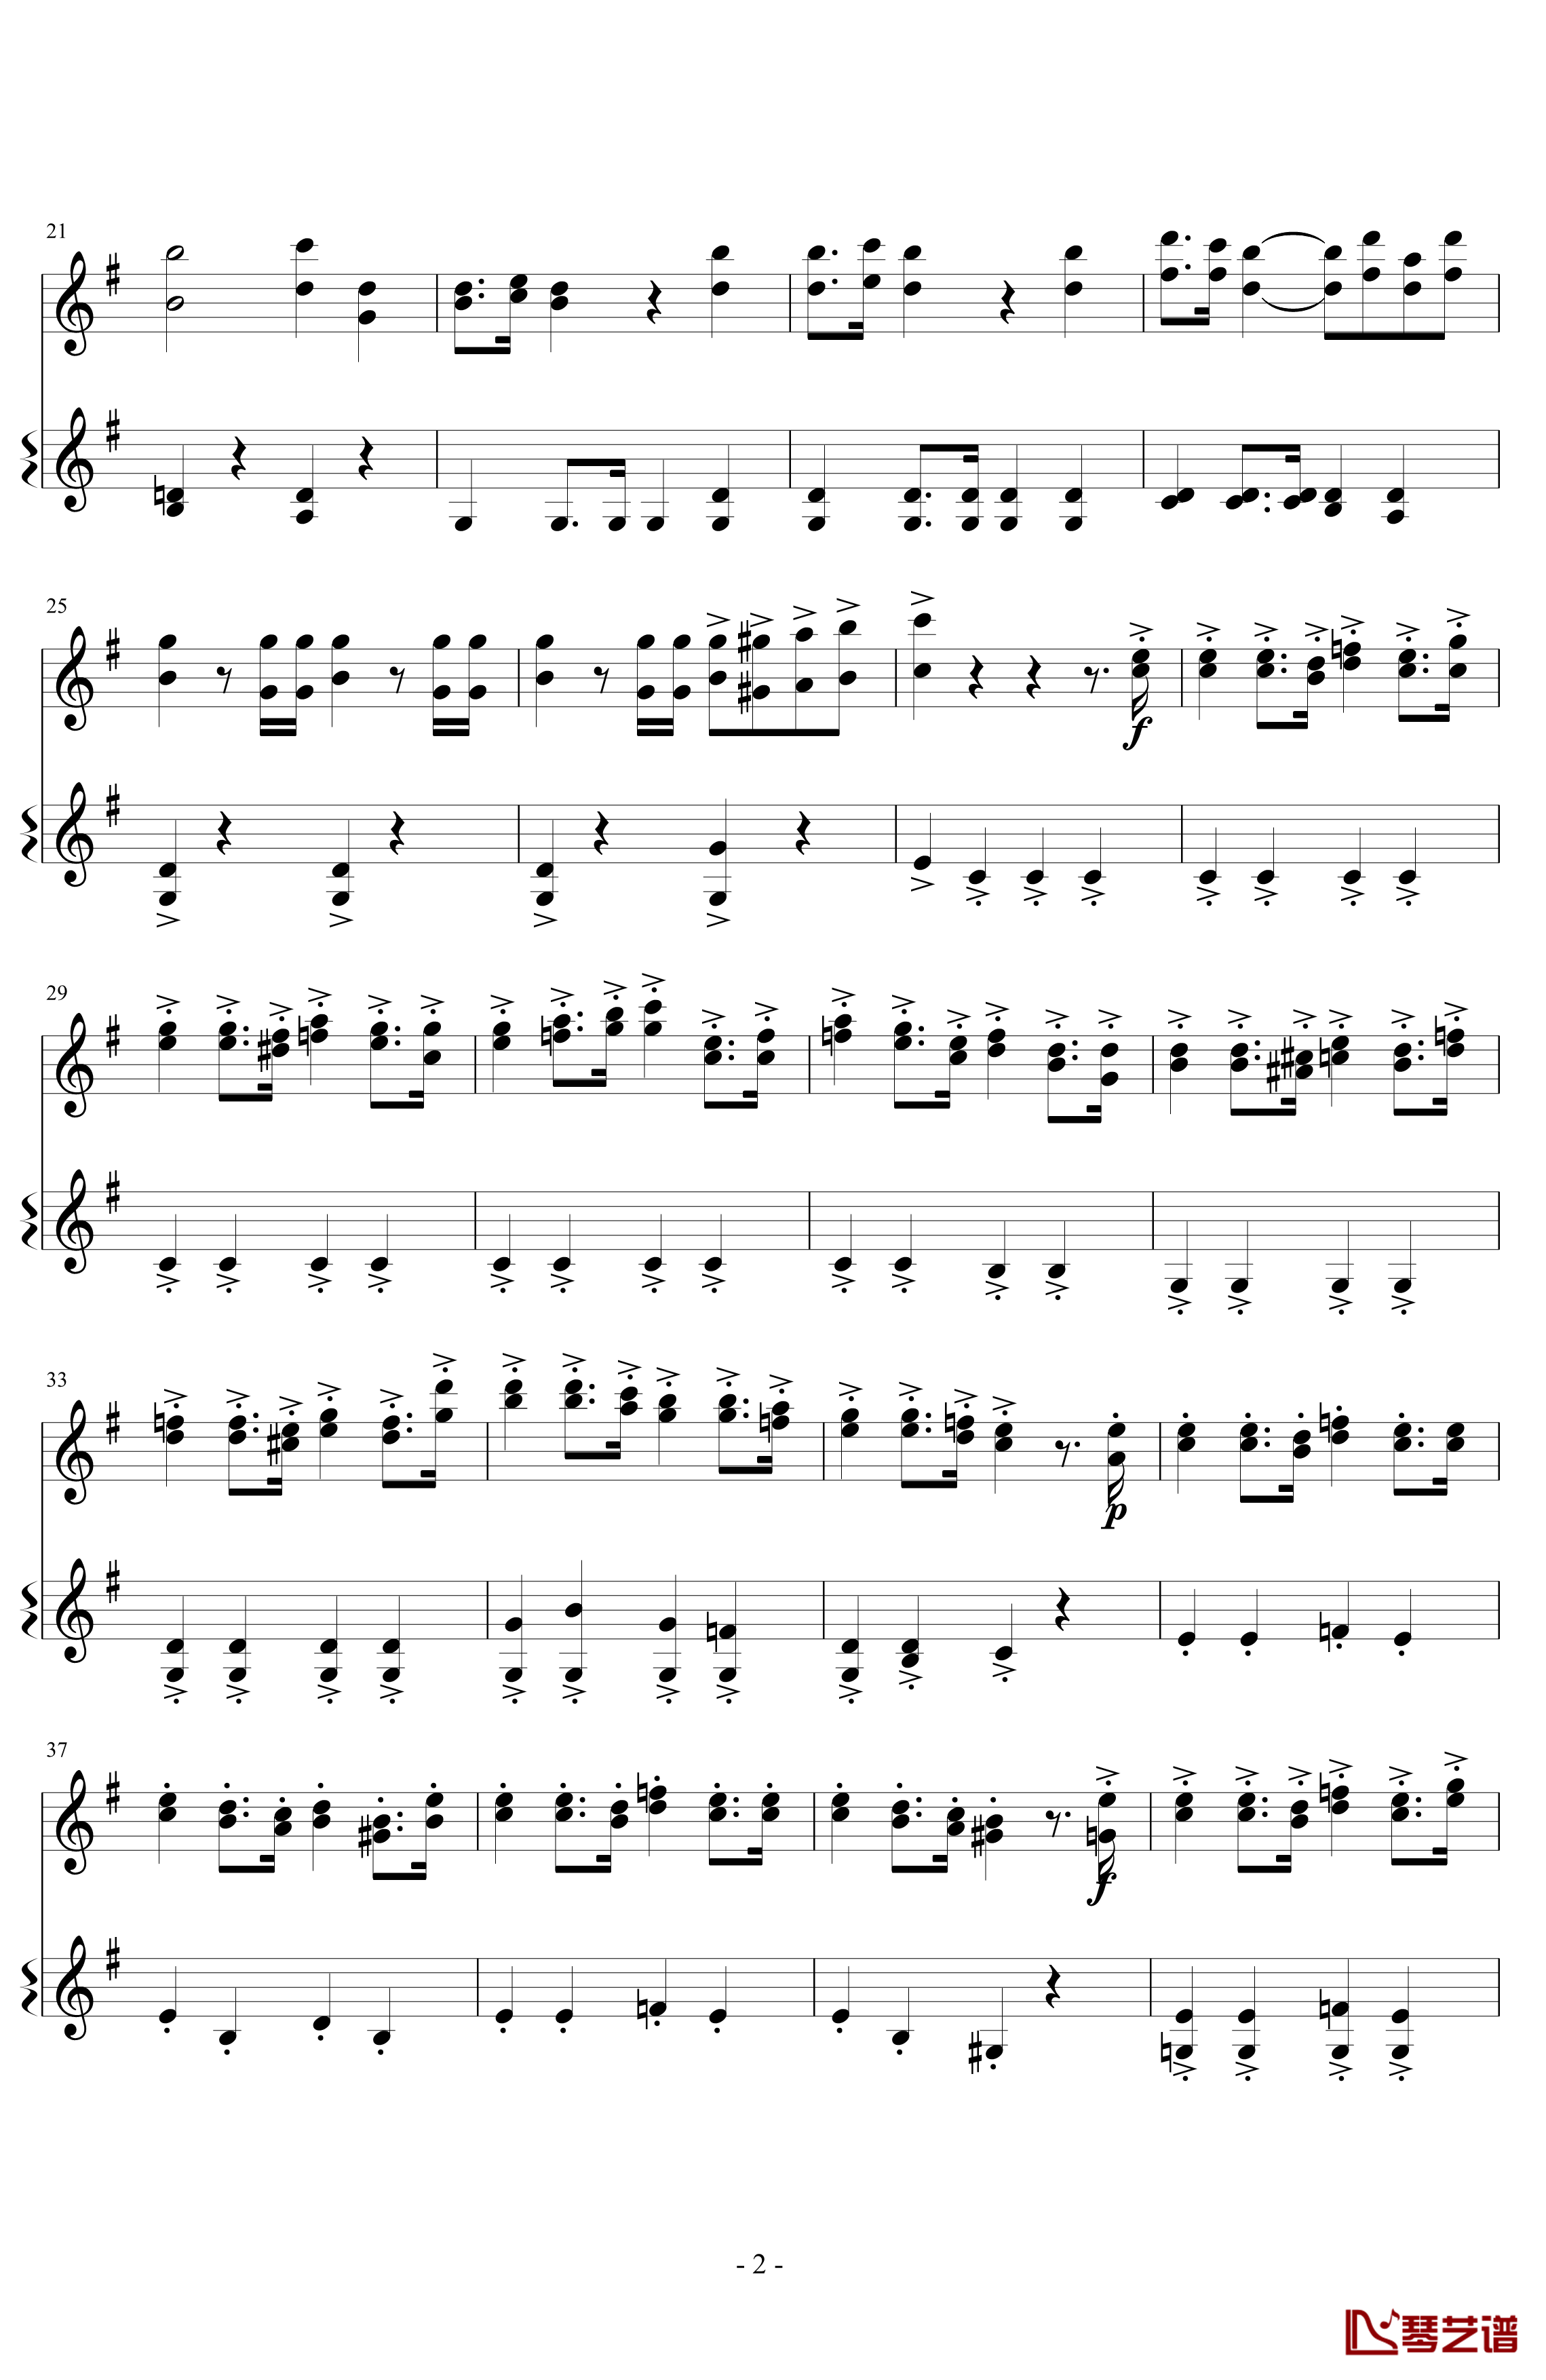 意大利国歌变奏曲钢琴谱-DXF2